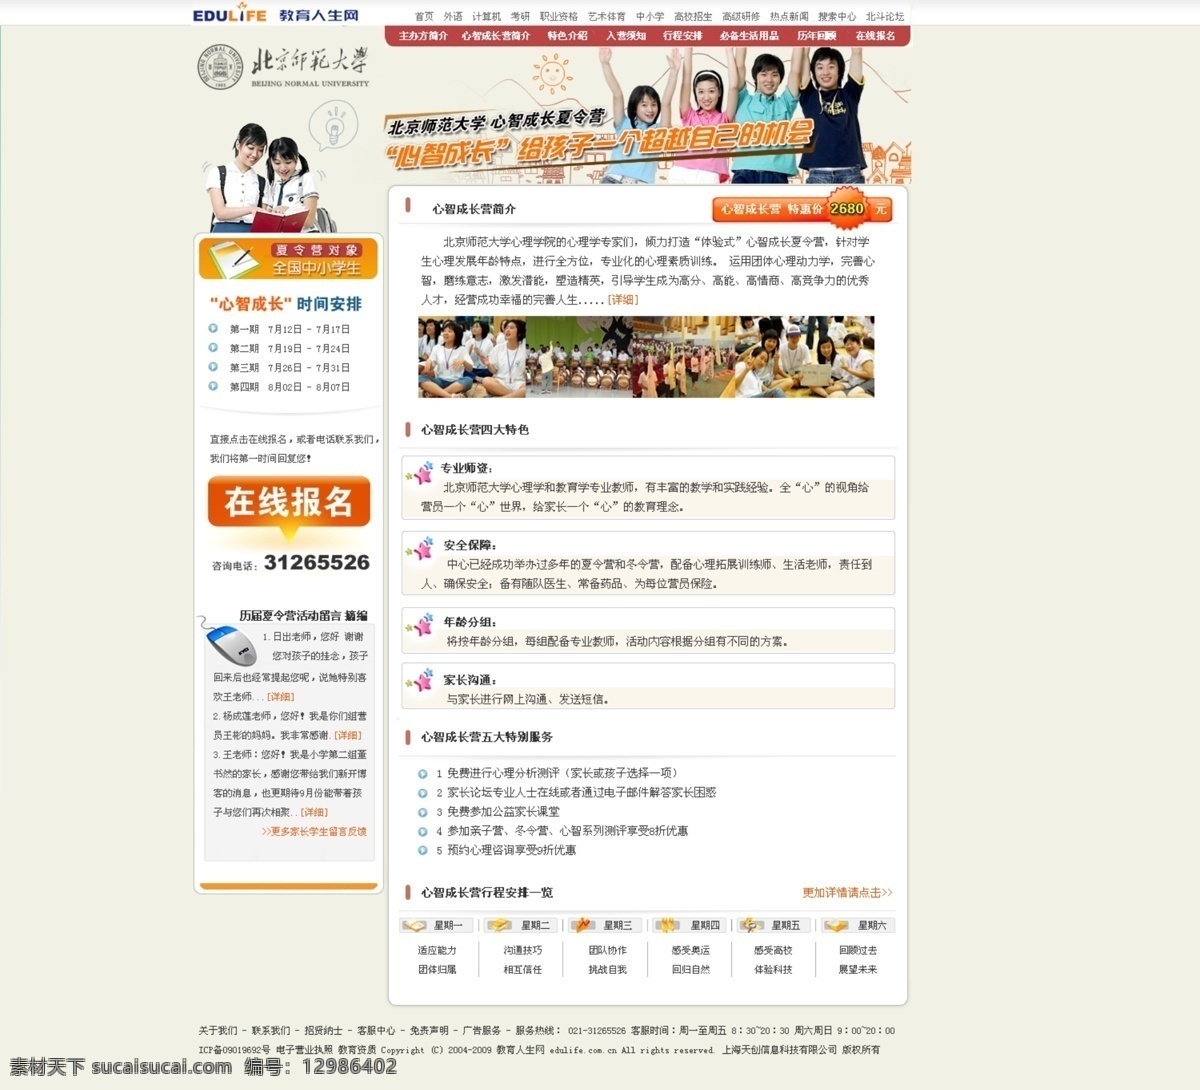 学校 夏令营 活动 网页模板 淡黄色 中国风格 网页素材